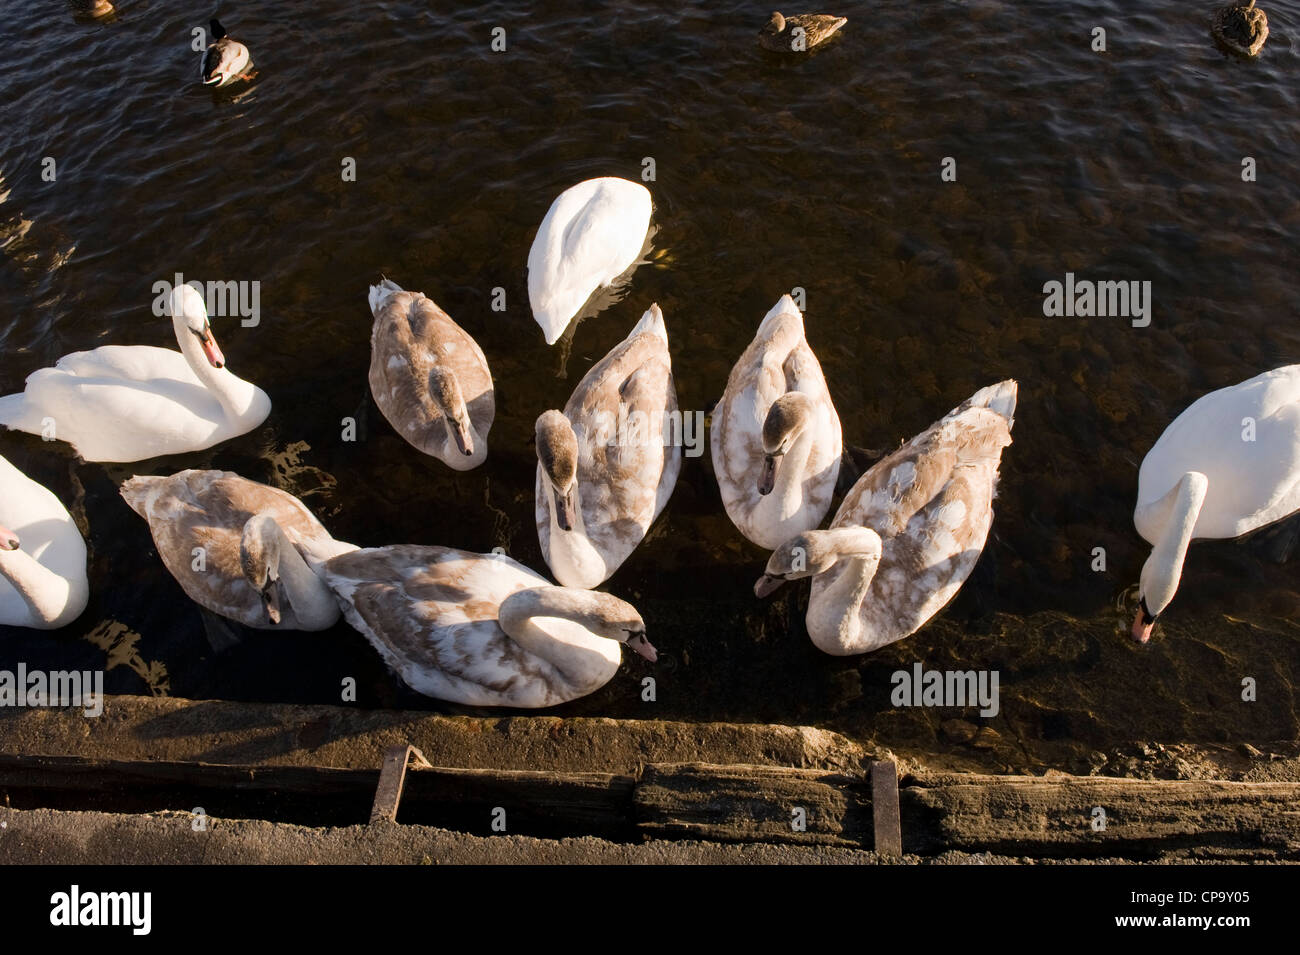 Troupeau de cygnes tuberculés nager sur l'eau en rive, adultes et juvéniles ensemble (vue de haut) - River Wharfe, Otley, North Yorkshire, Angleterre, Royaume-Uni. Banque D'Images